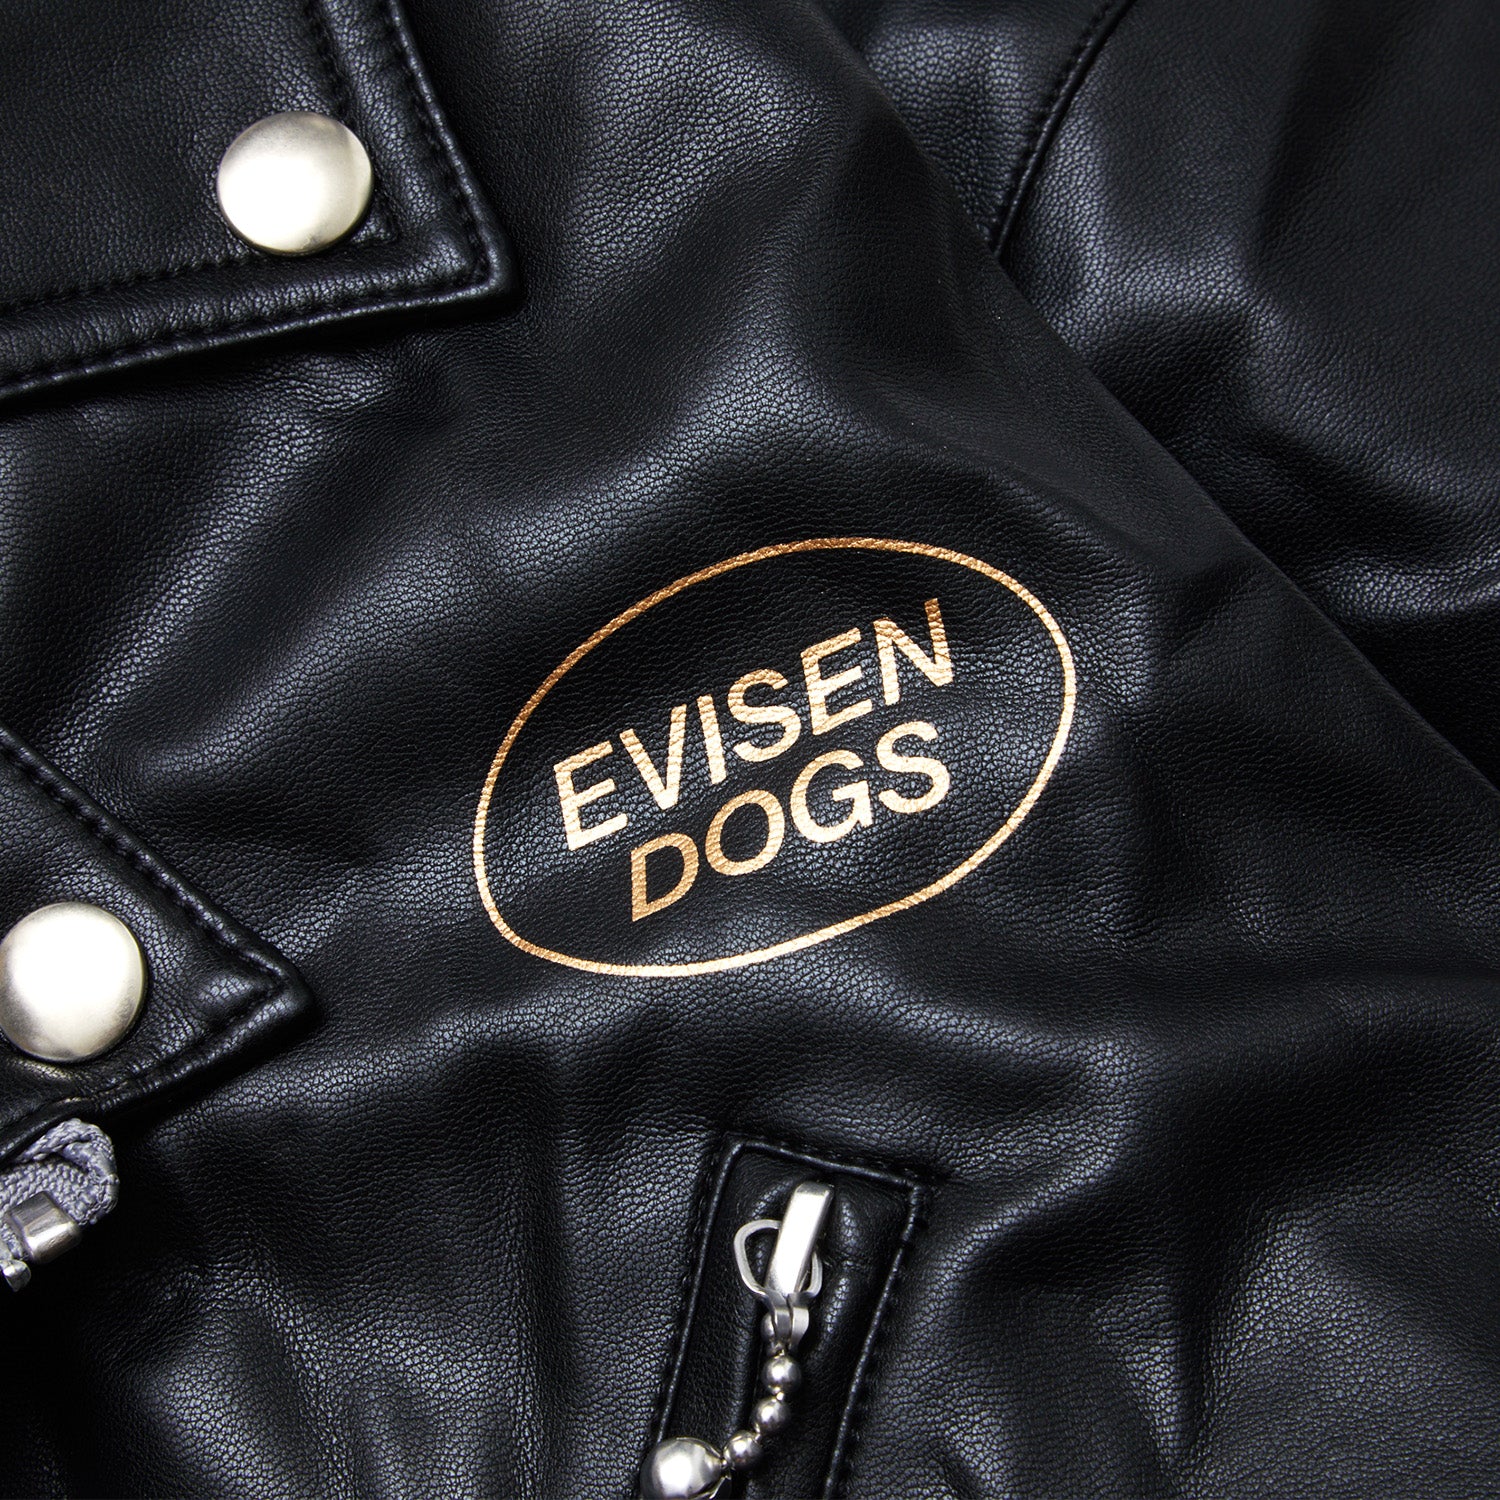 EVISEN / BIAS DOGS Super Real LEATHER JKT - BLACK – Evisen ...